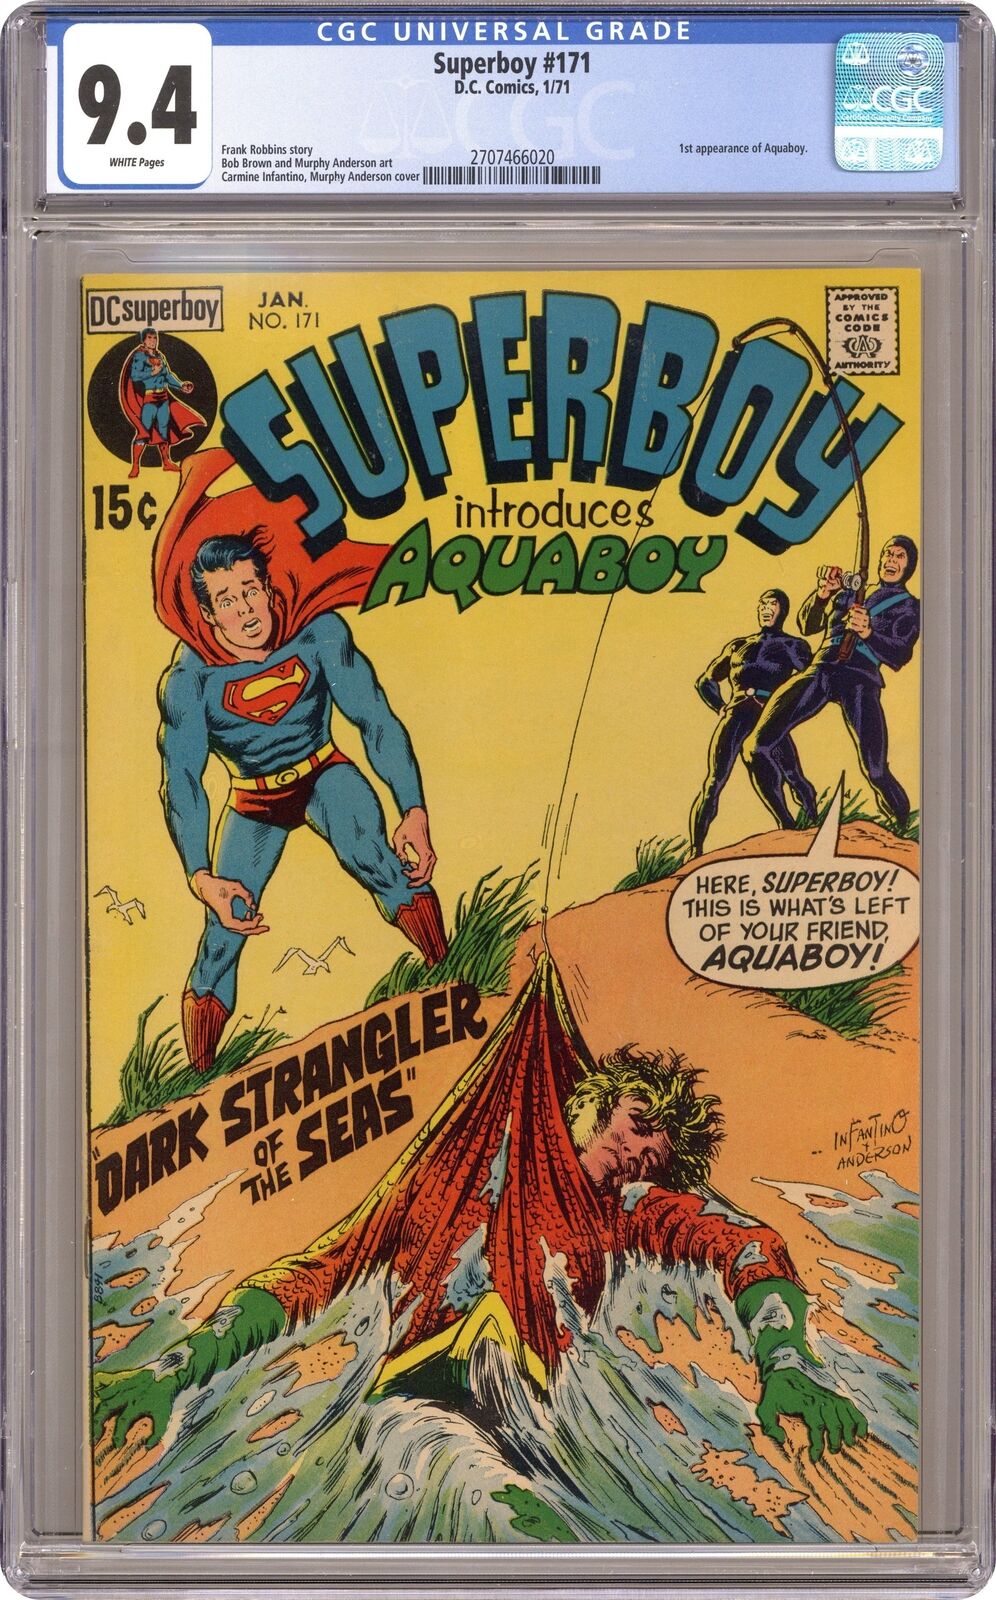 Superboy #171 CGC 9.4 1971 2707466020